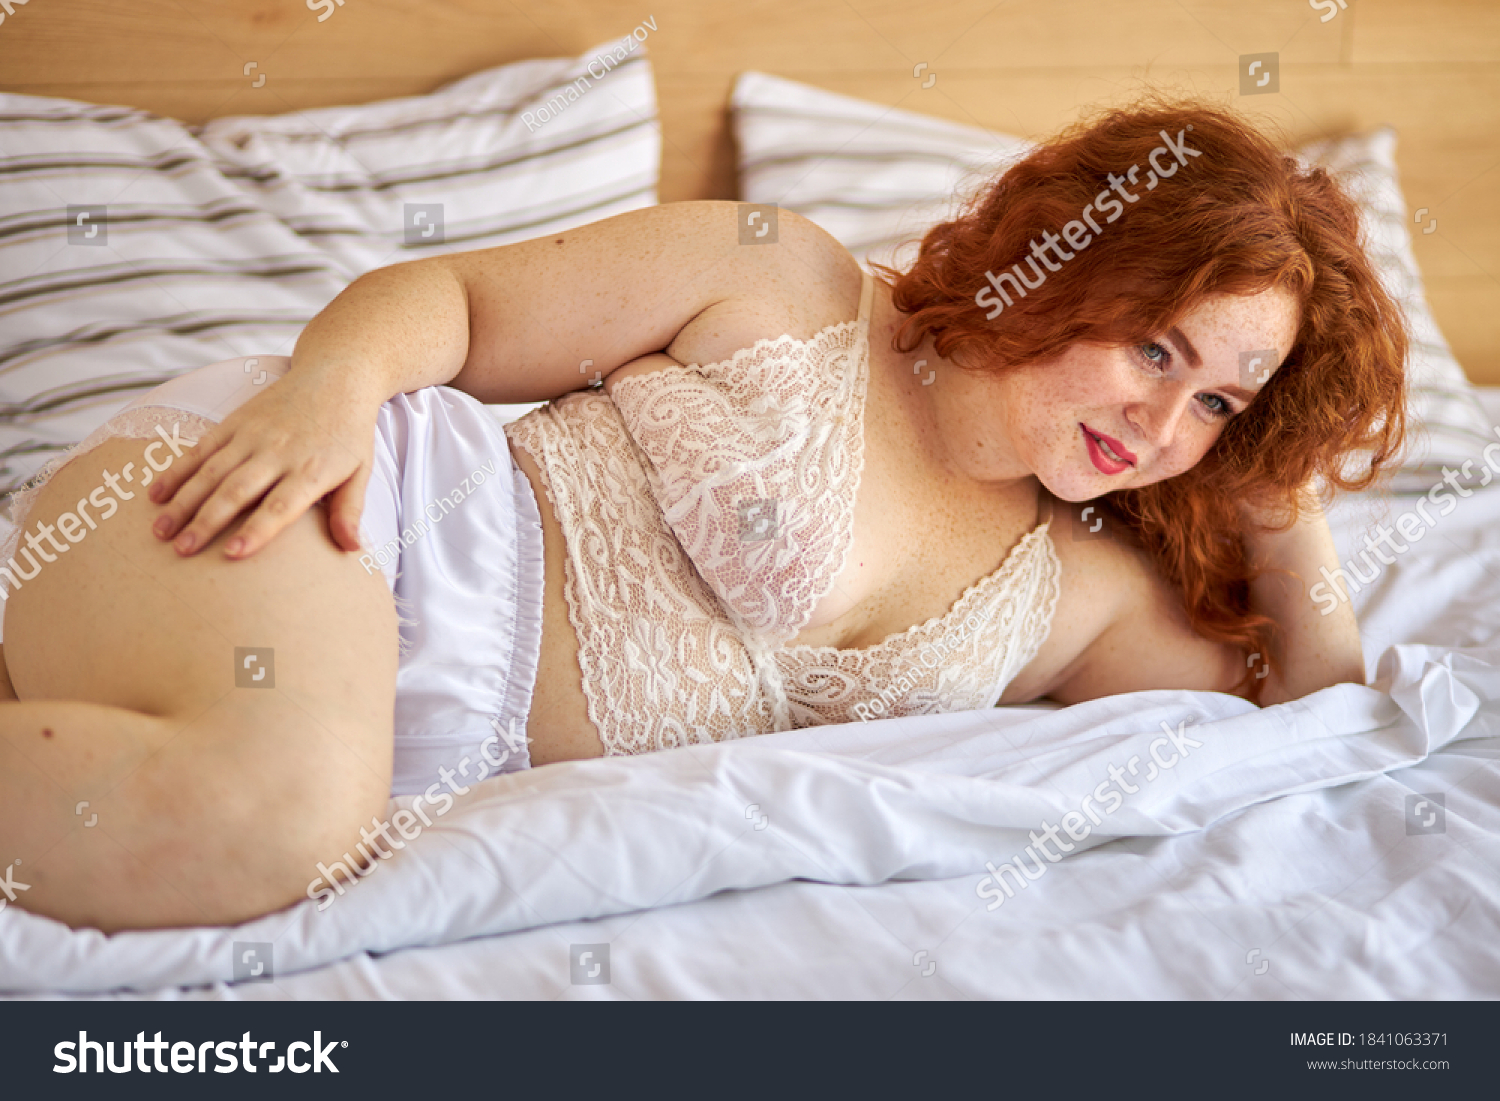 Рыжая женщина пухлая голая на кровати